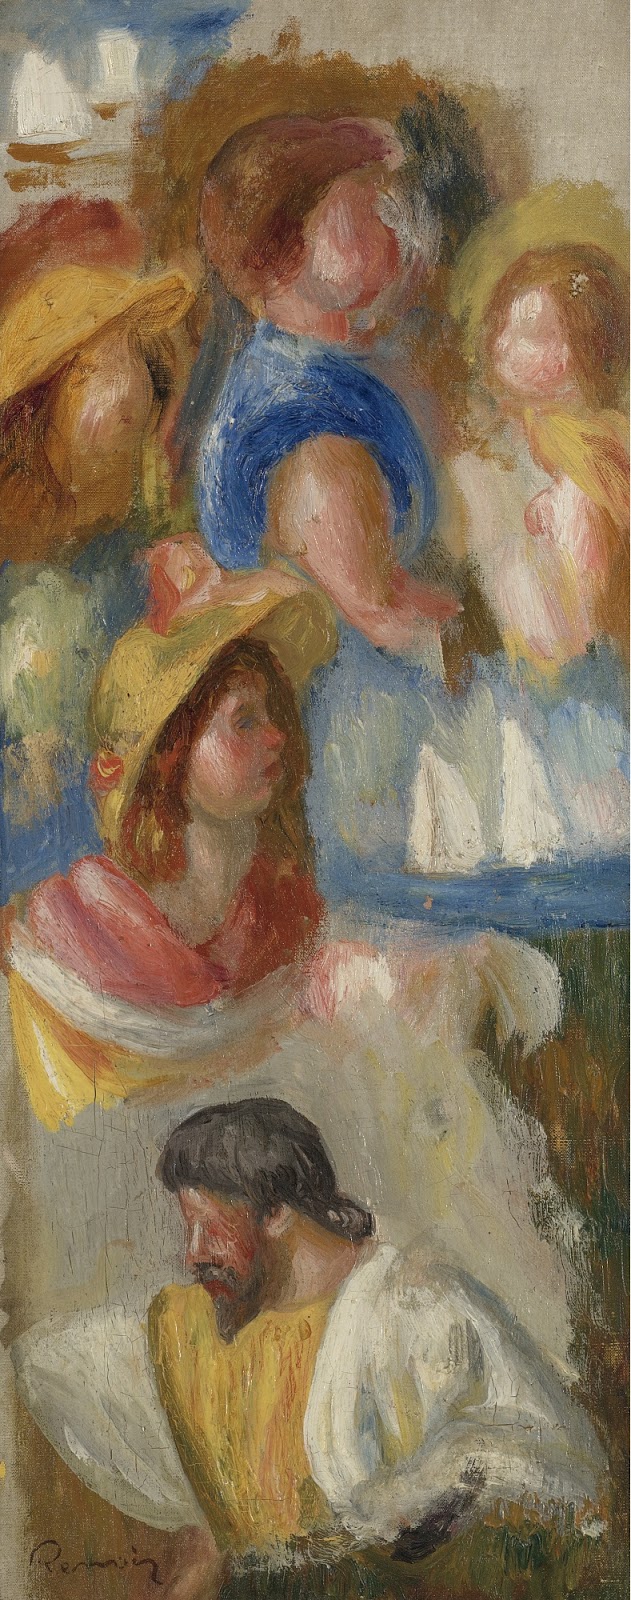 Pierre+Auguste+Renoir-1841-1-19 (819).jpg